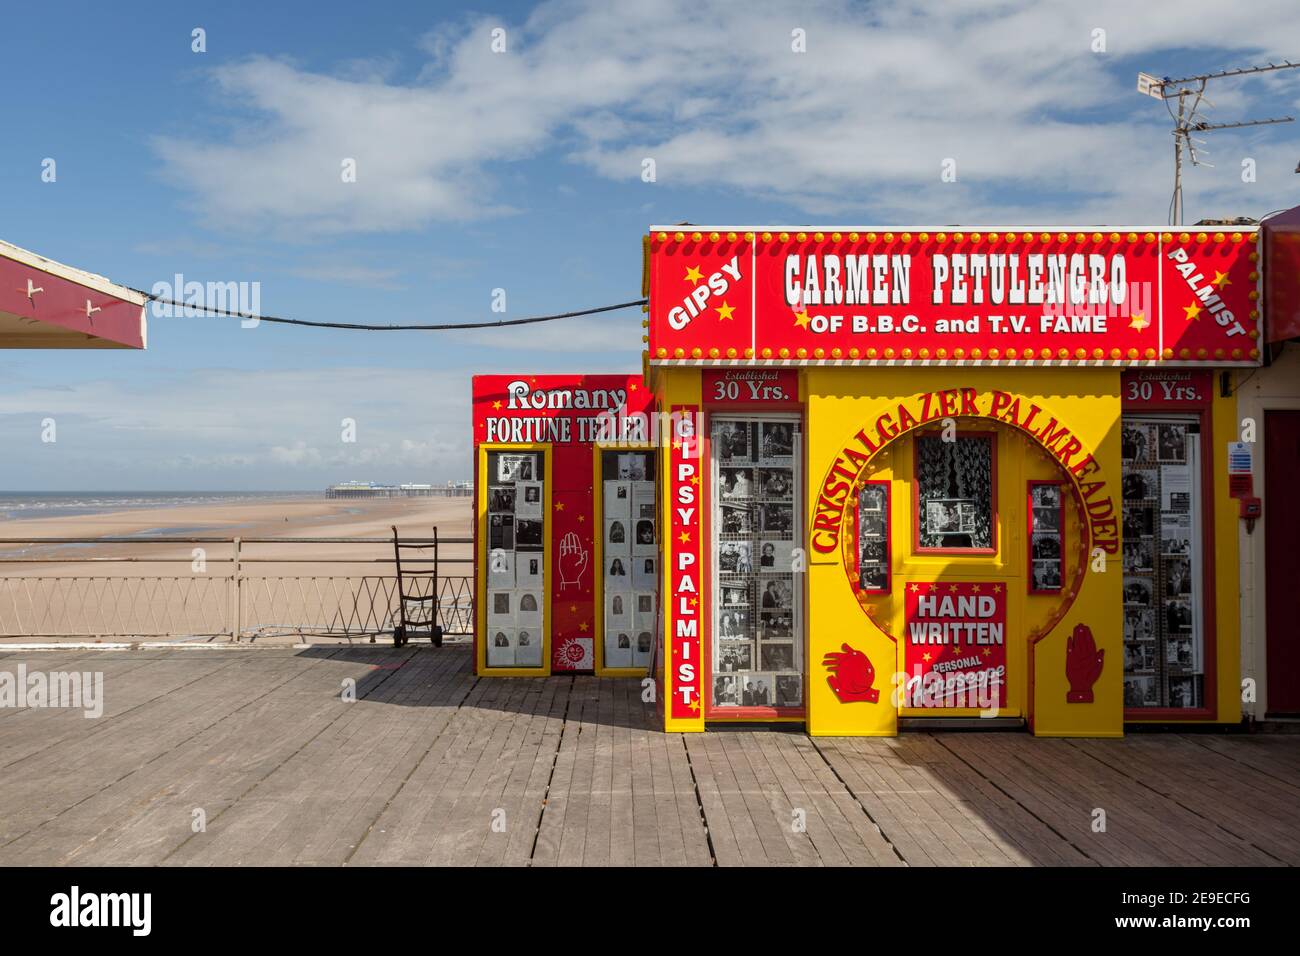 Lo stand di Carmen Petulengo sul molo sud di Blackpool Foto Stock